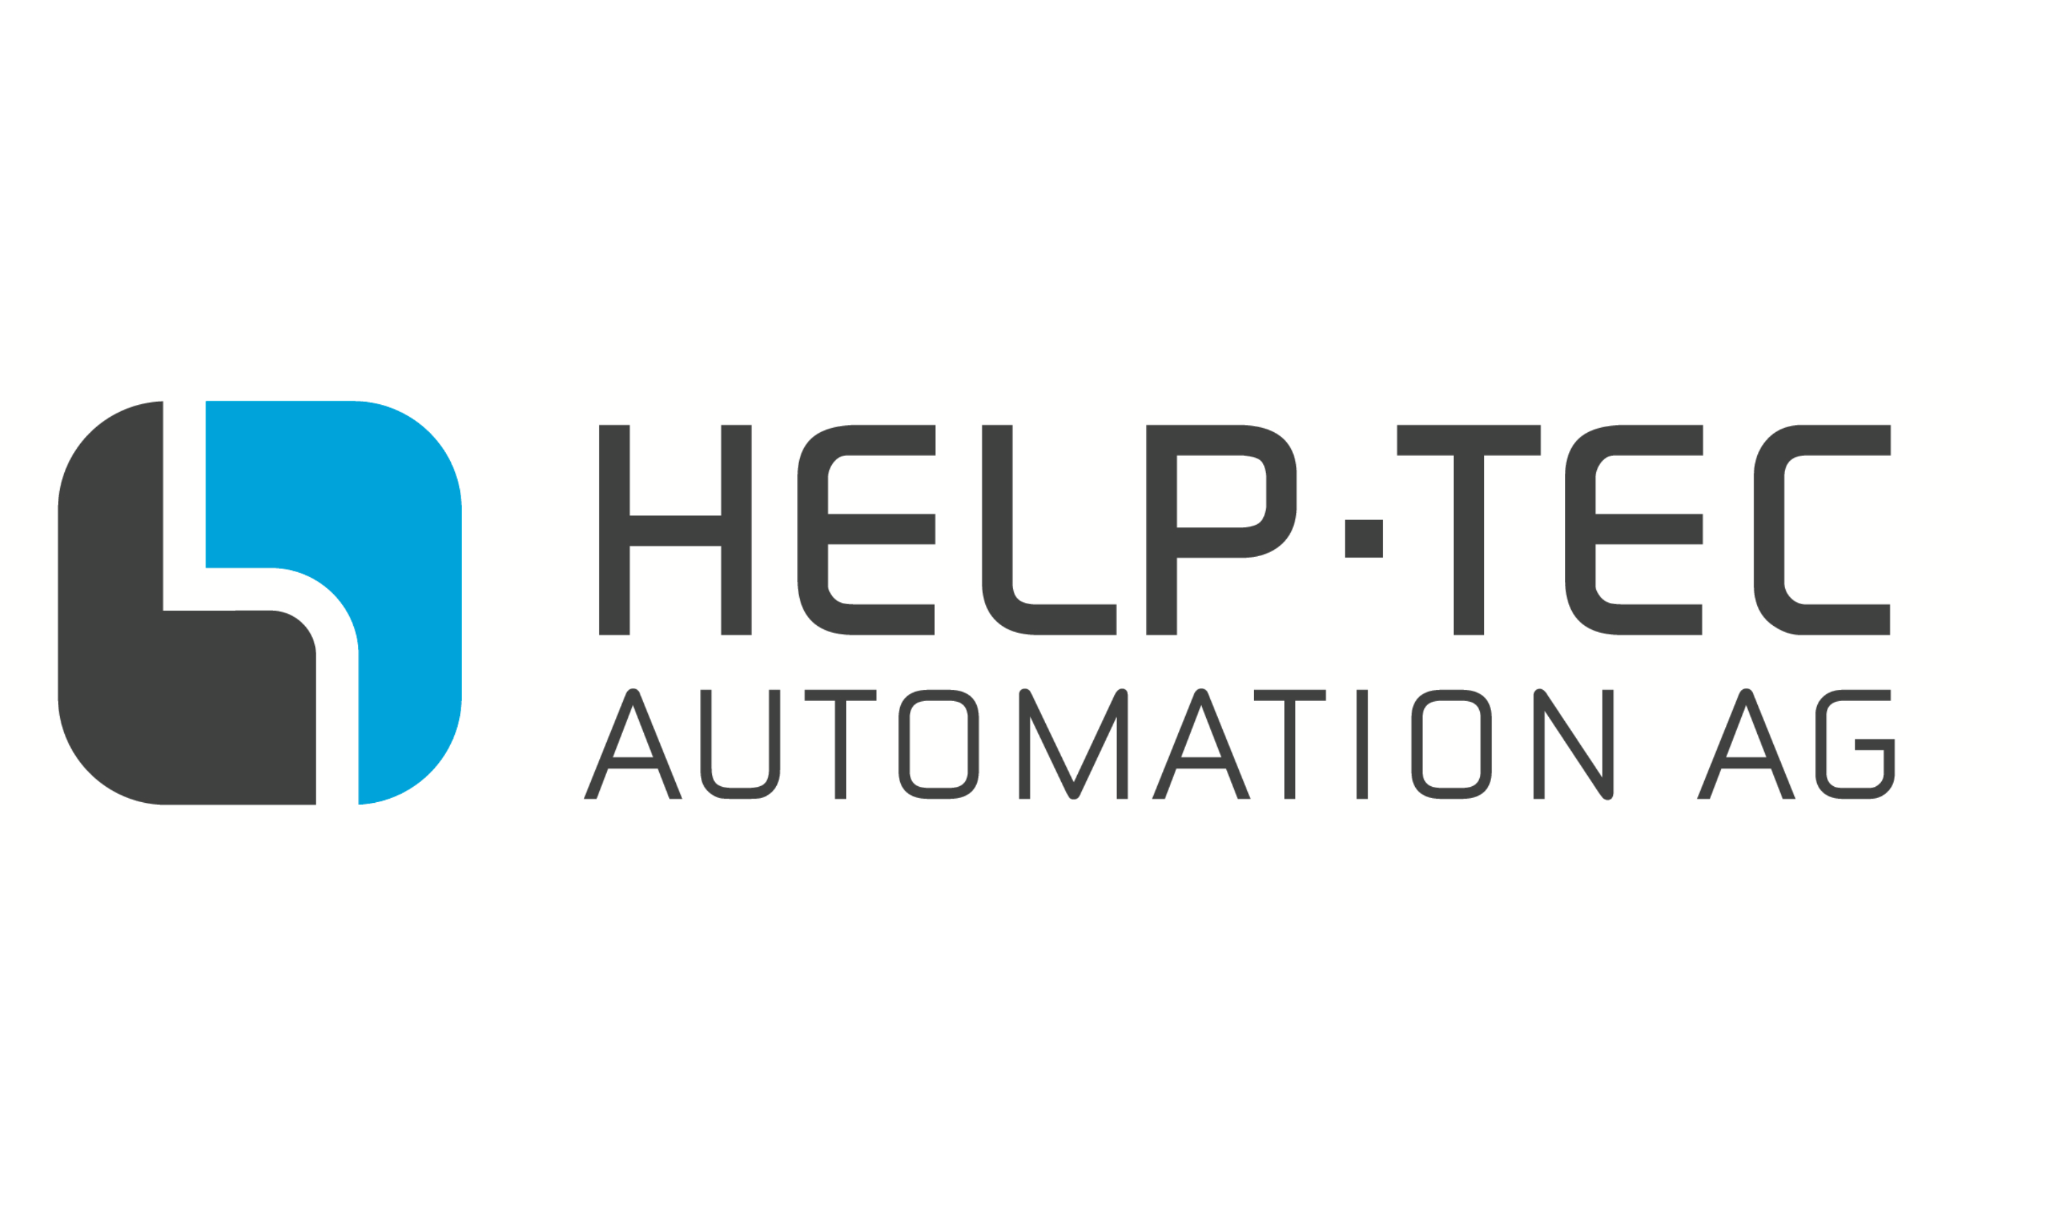 HELP-TEC Automation AG